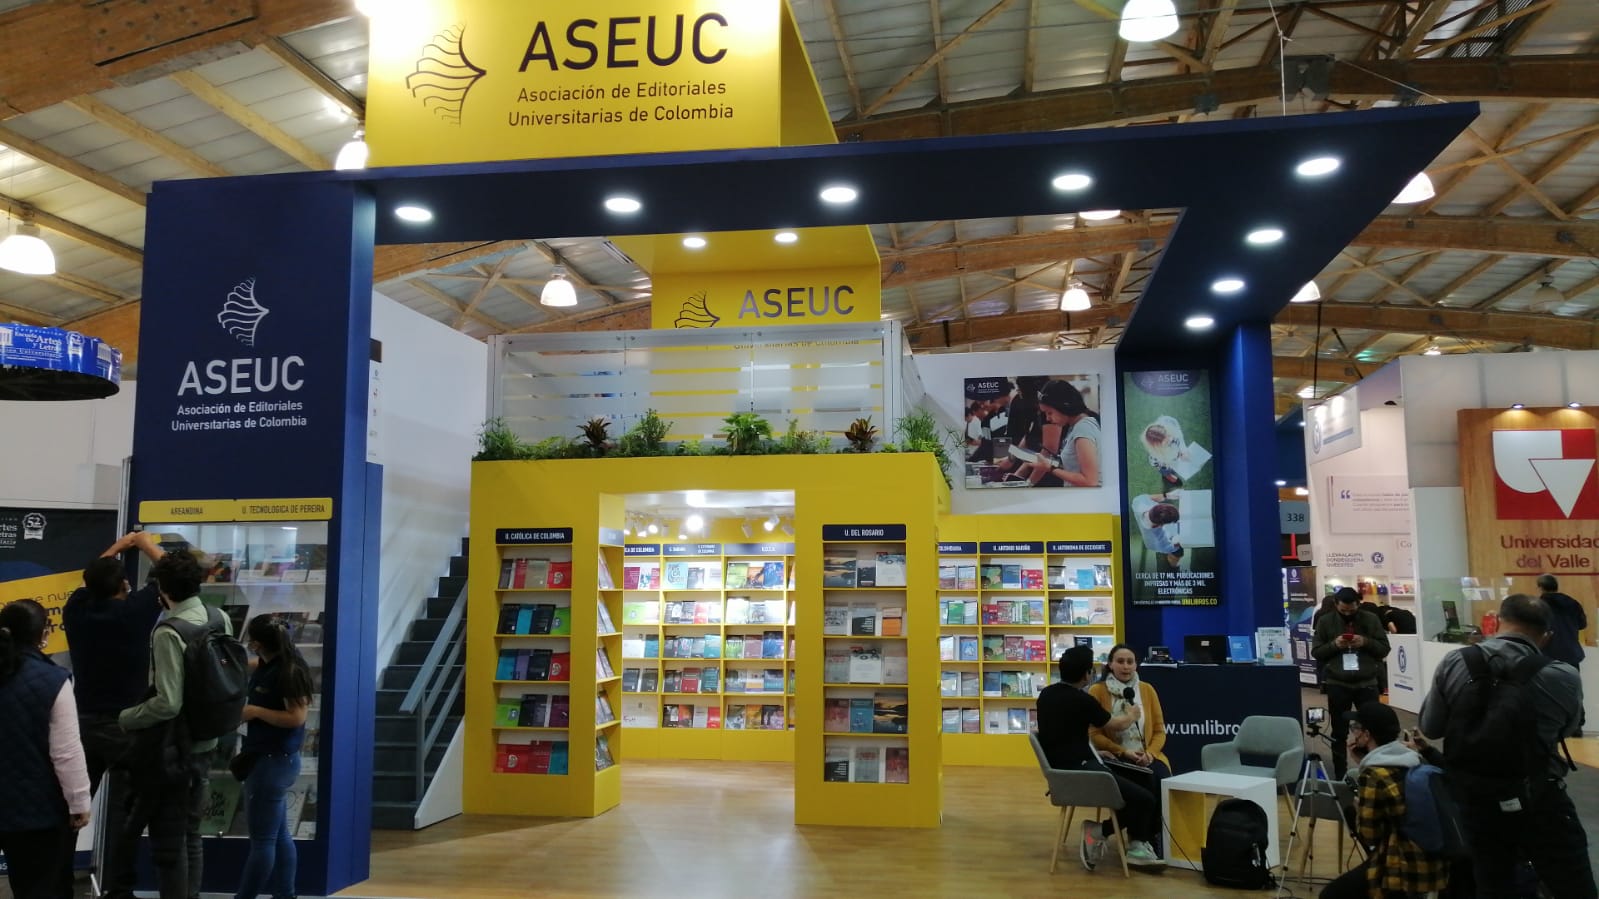 Asociación de Editoriales Universitarias de Colombia, ASEUC.